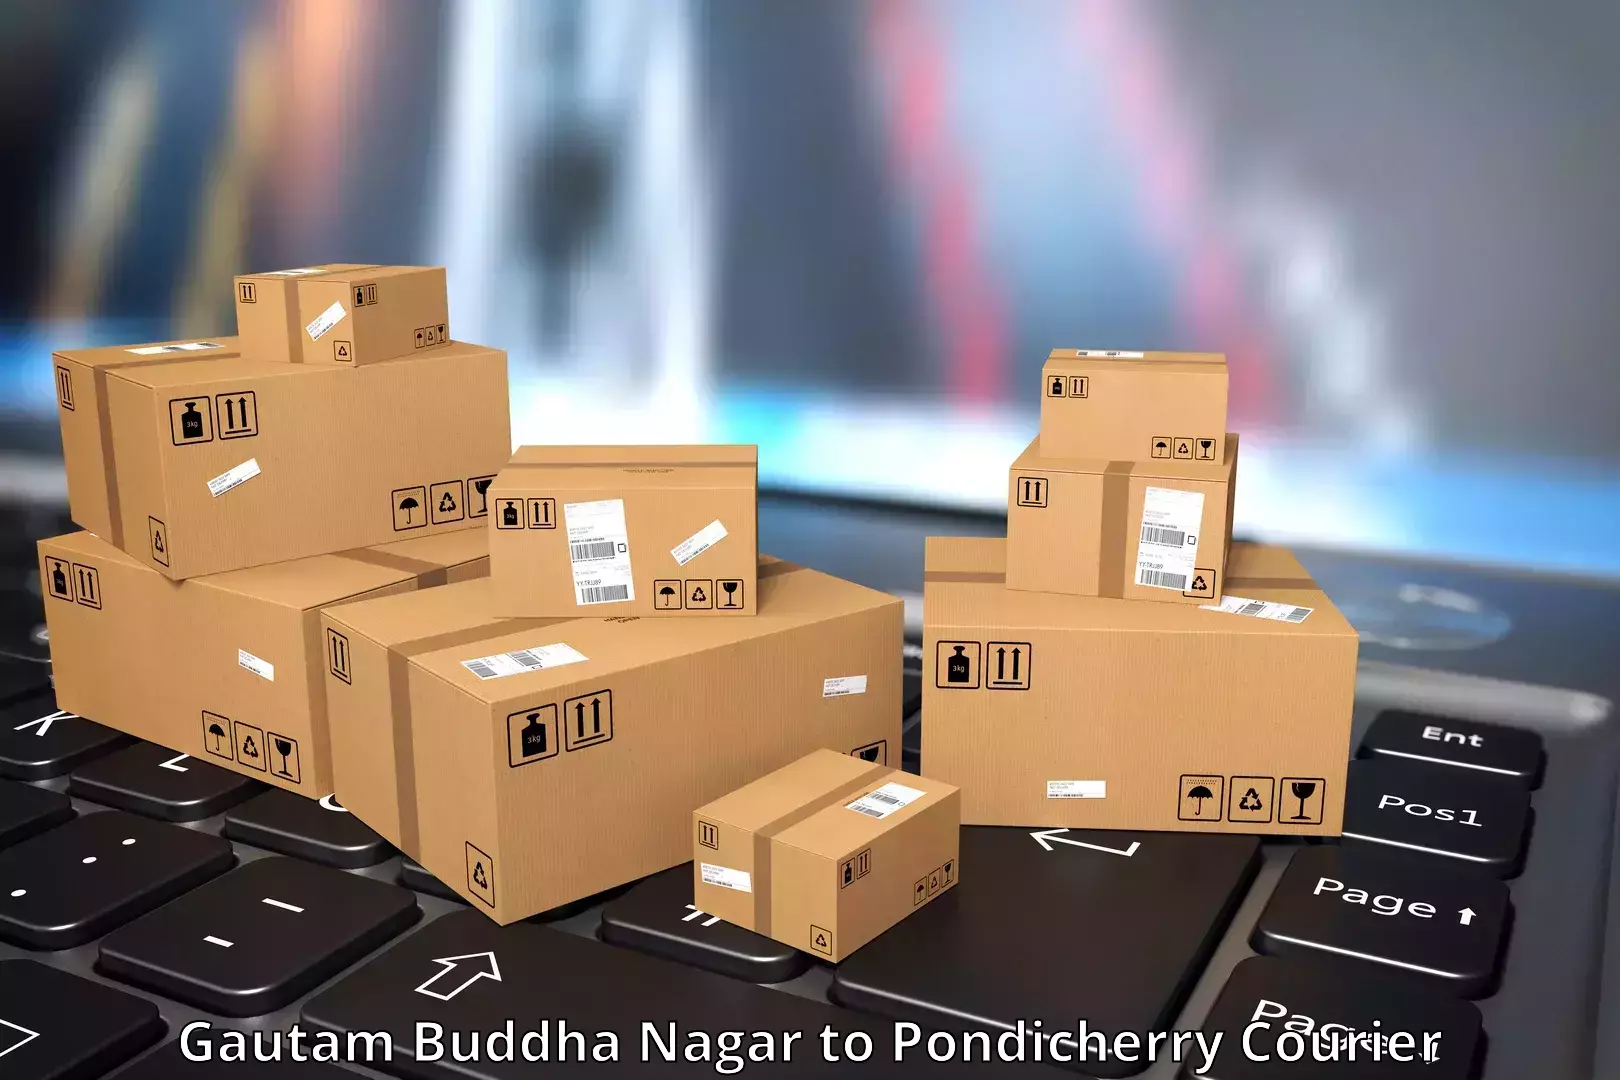 International parcel service Gautam Buddha Nagar to Pondicherry University